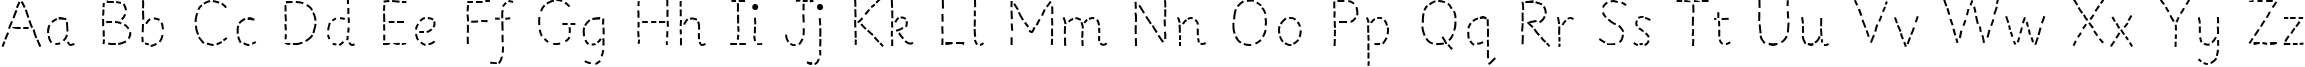 Пример написания английского алфавита шрифтом Primer Apples